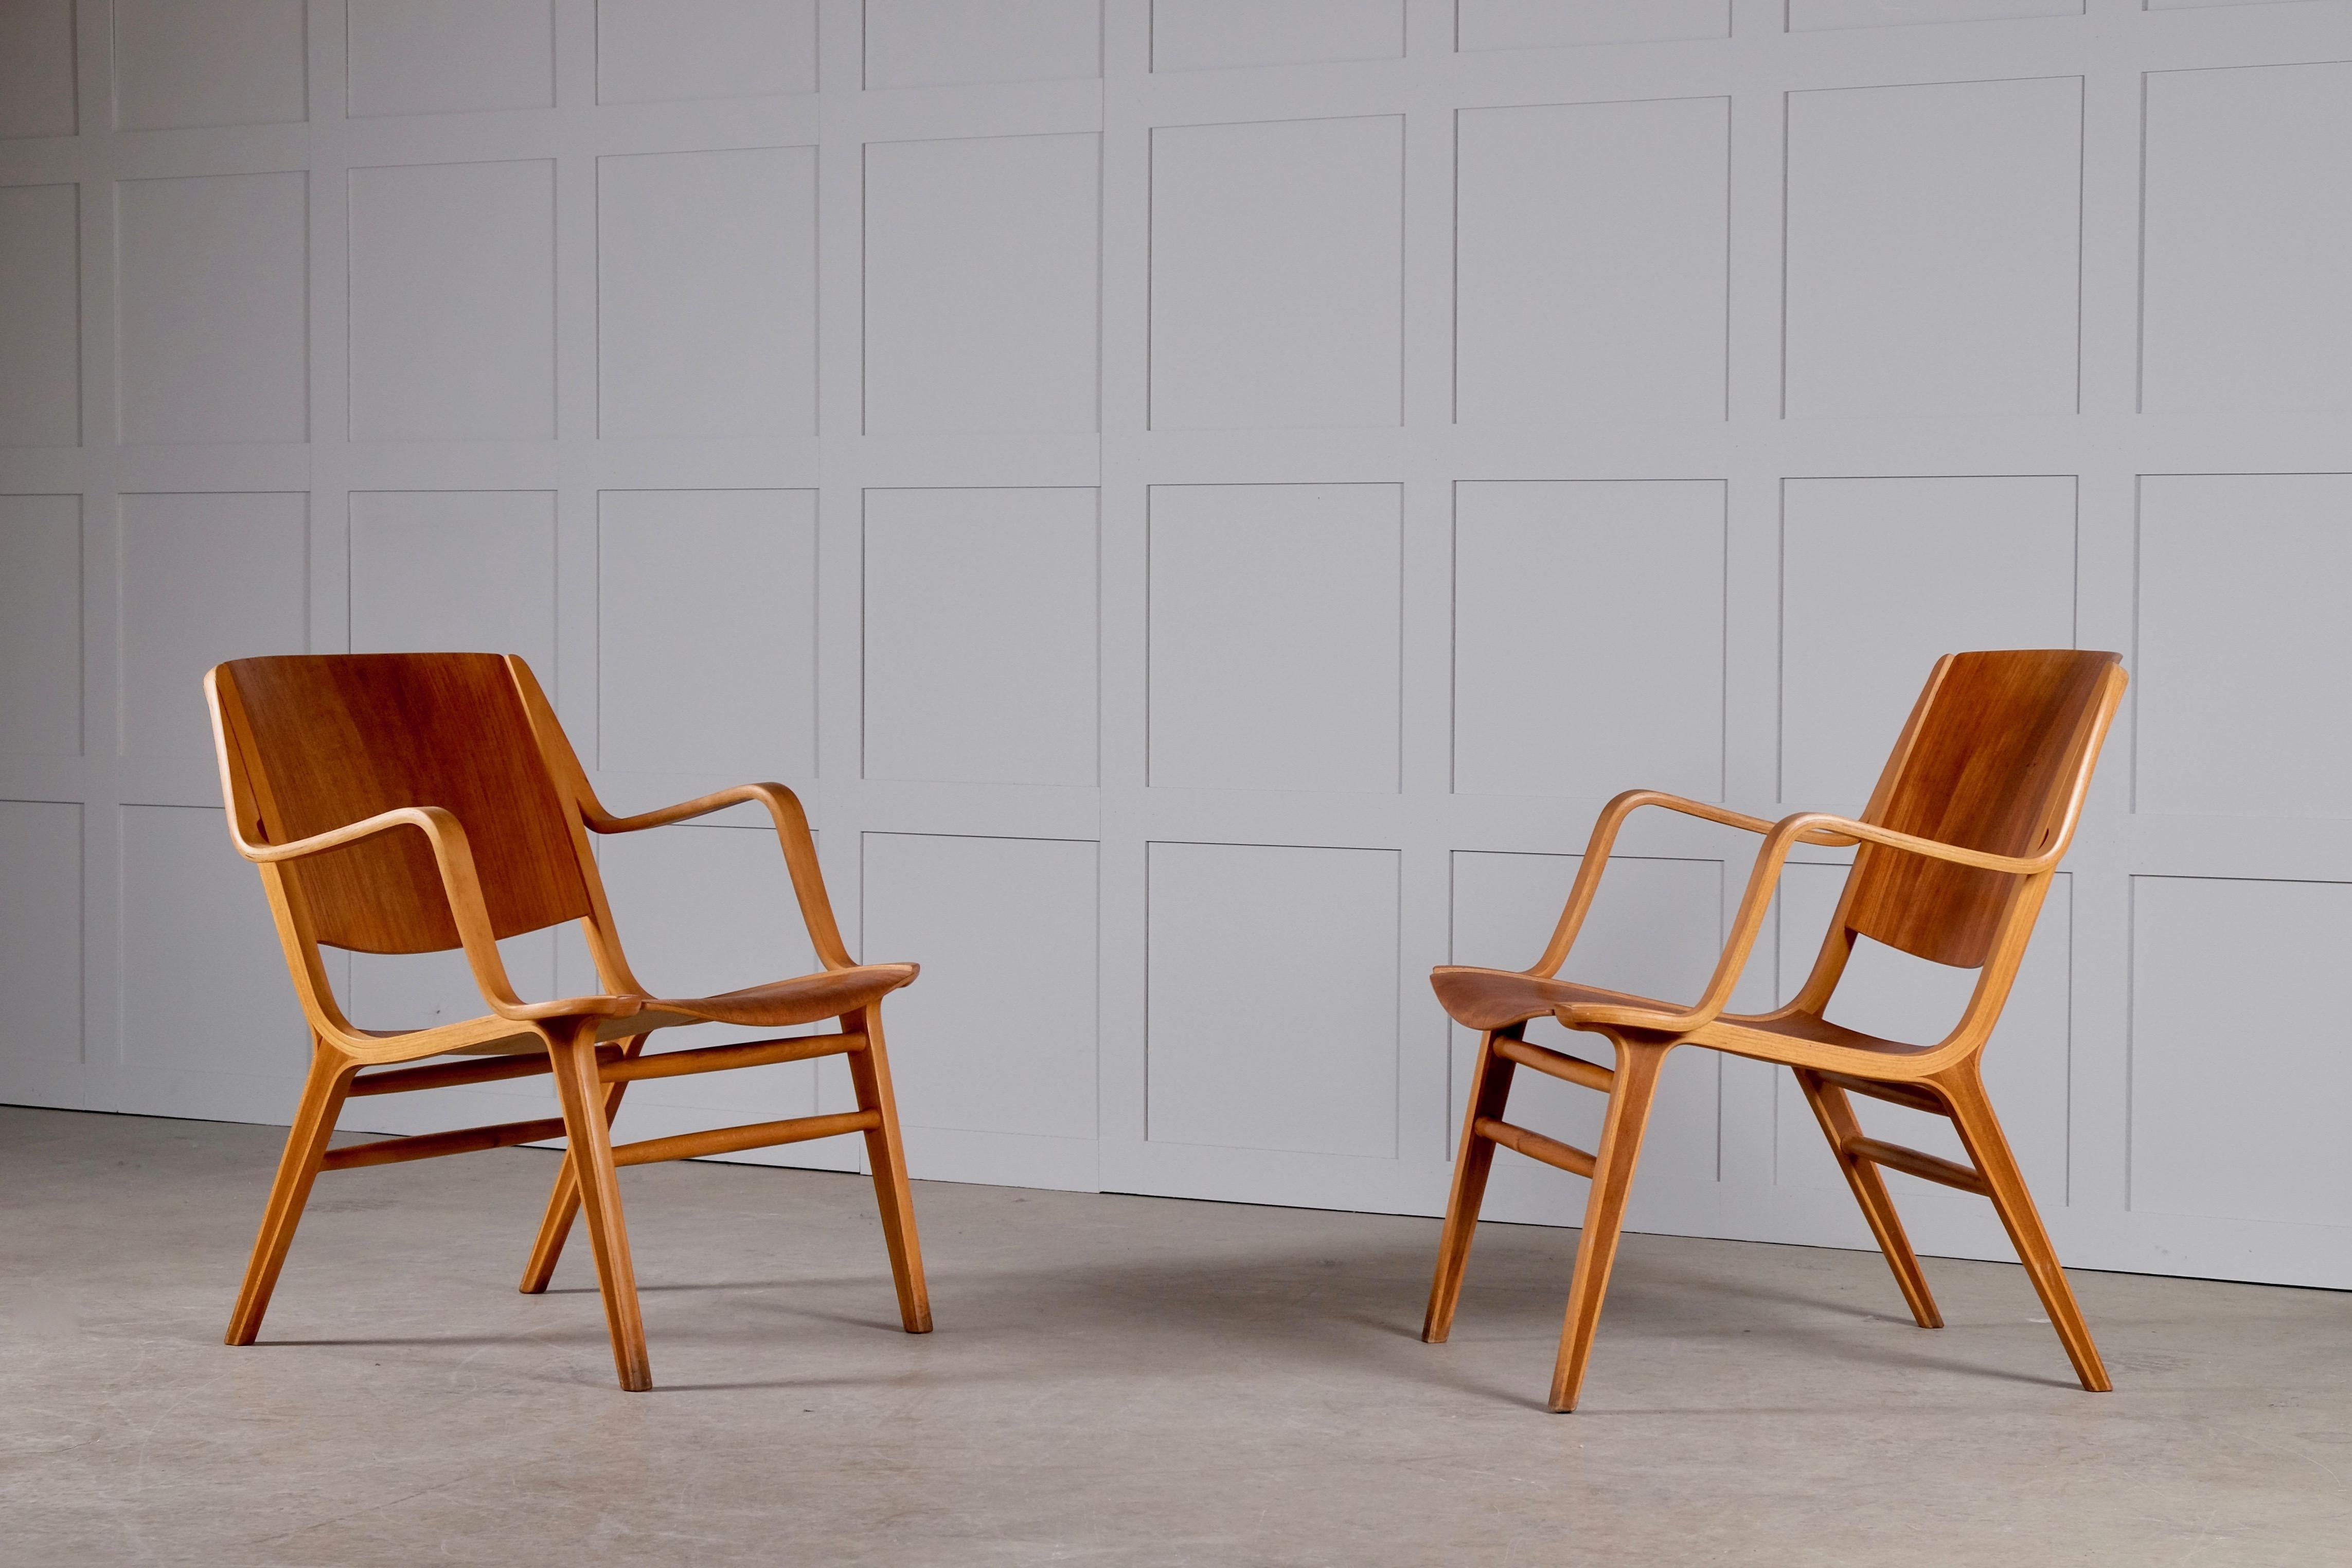 Très bon état. Produit par Fritz Hansen, années 1950.
Un exemple de cette chaise se trouve au Musée du design de Copenhague, au Danemark.